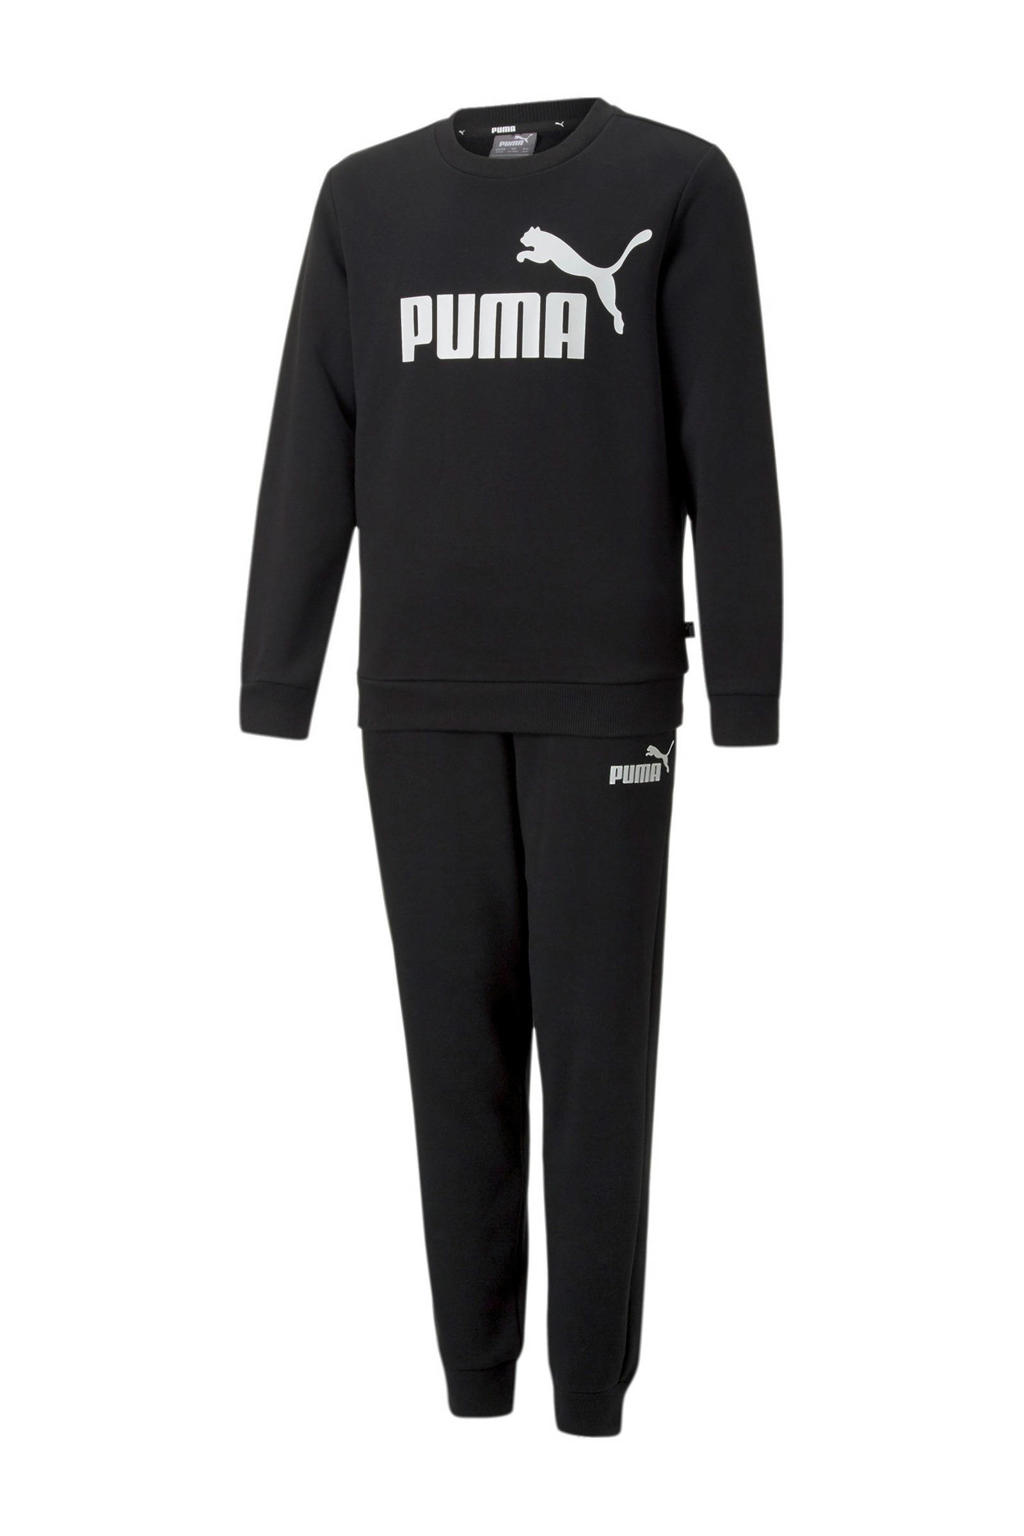 Puma joggingpak zwart